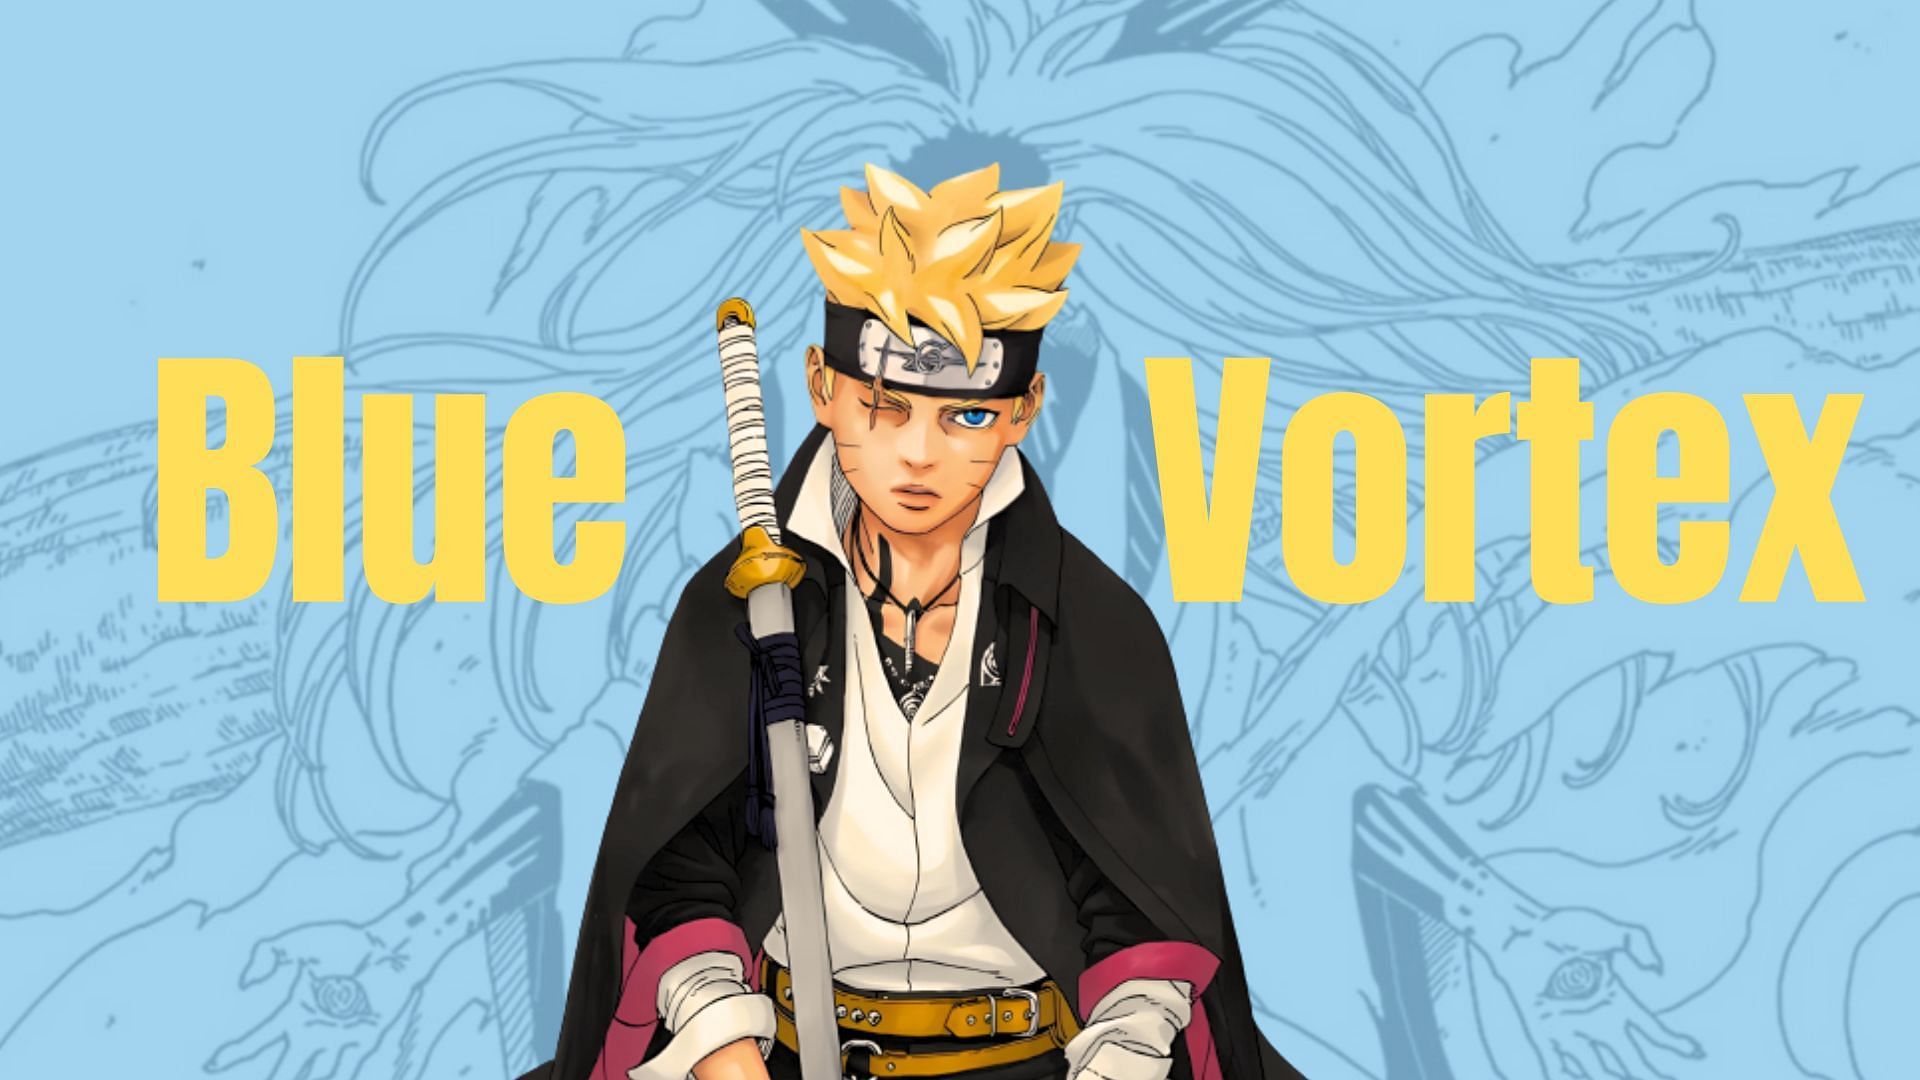 Boruto: Two Blue Vortex, Wiki Naruto